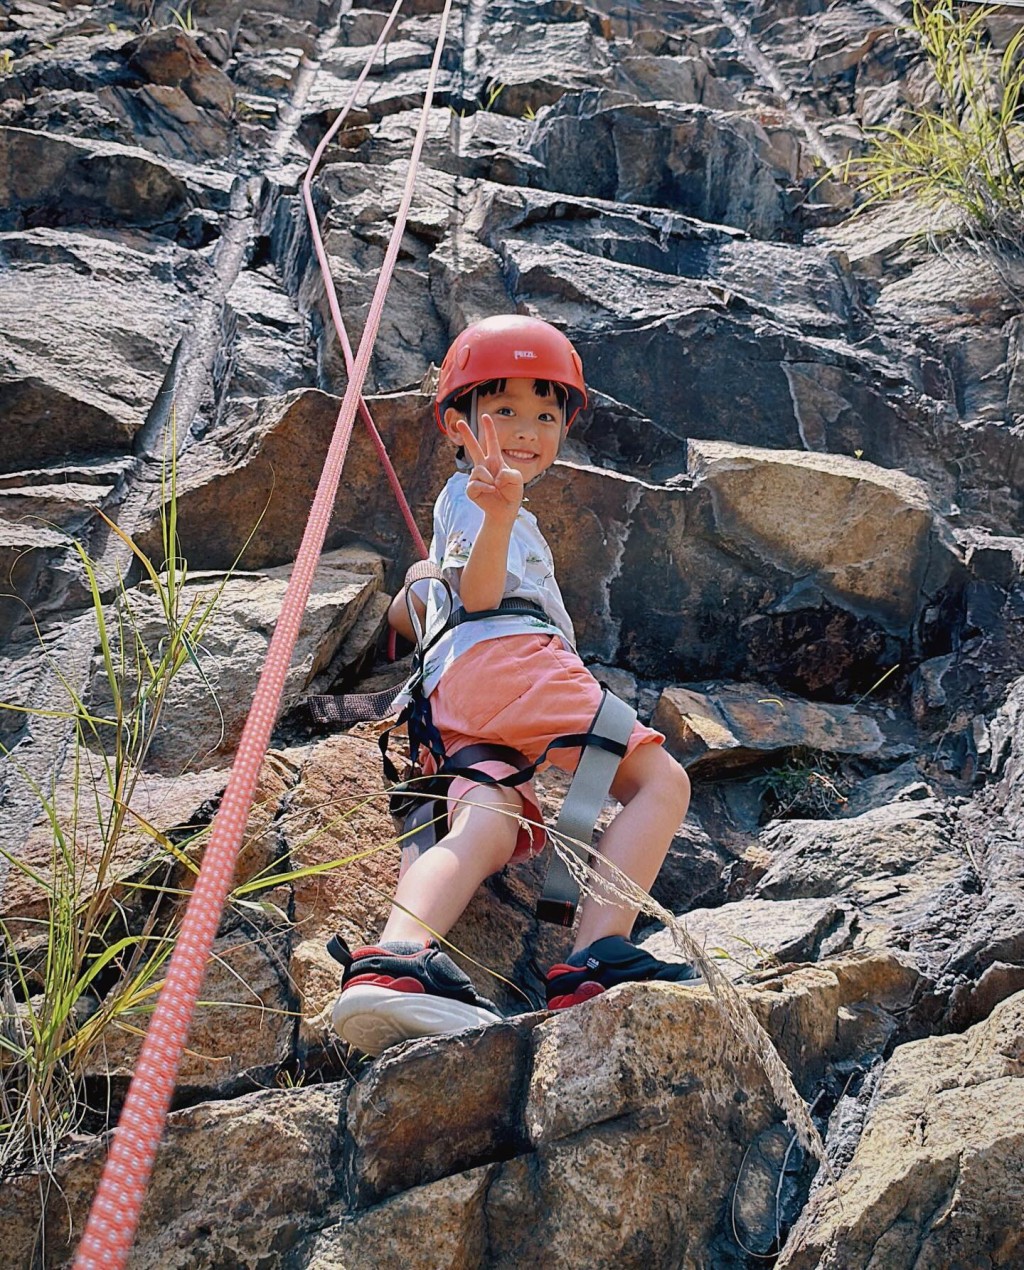 大仔Rafael有勇氣玩山上攀岩石。